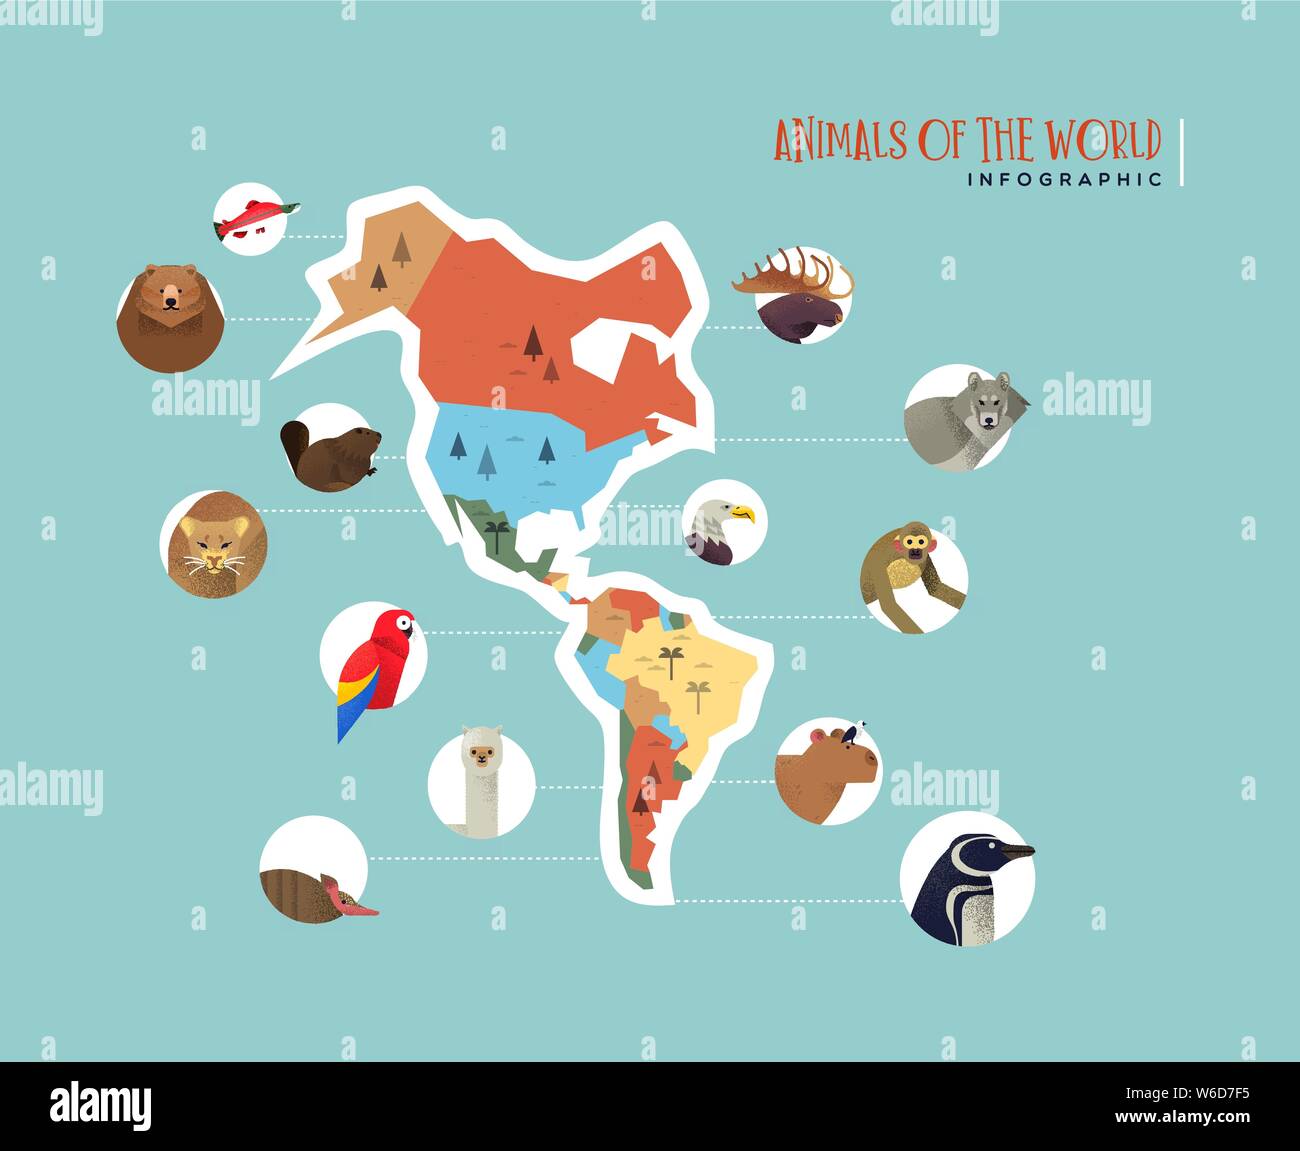 Amerika Karte Infografik mit wilden Tieren aus Süd- und Nordamerika. Vielfältige Tierwelt Symbole beinhaltet Bär, Affe, Vogel, Wolf, exotische Fauna te Stock Vektor